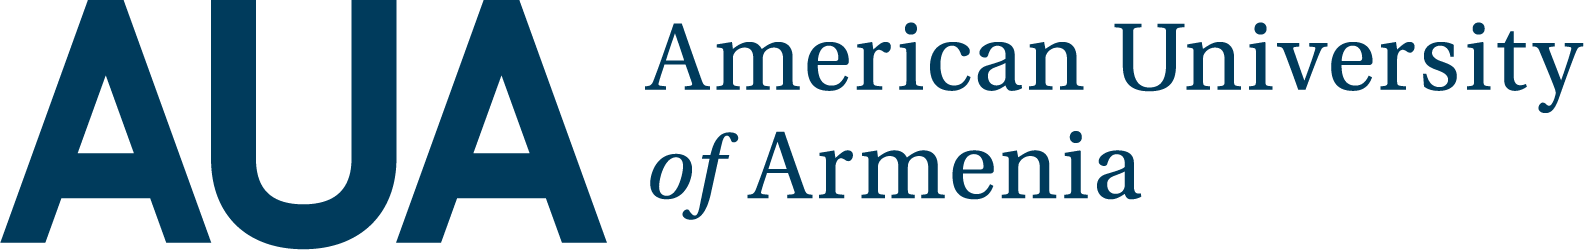 AUA logo header